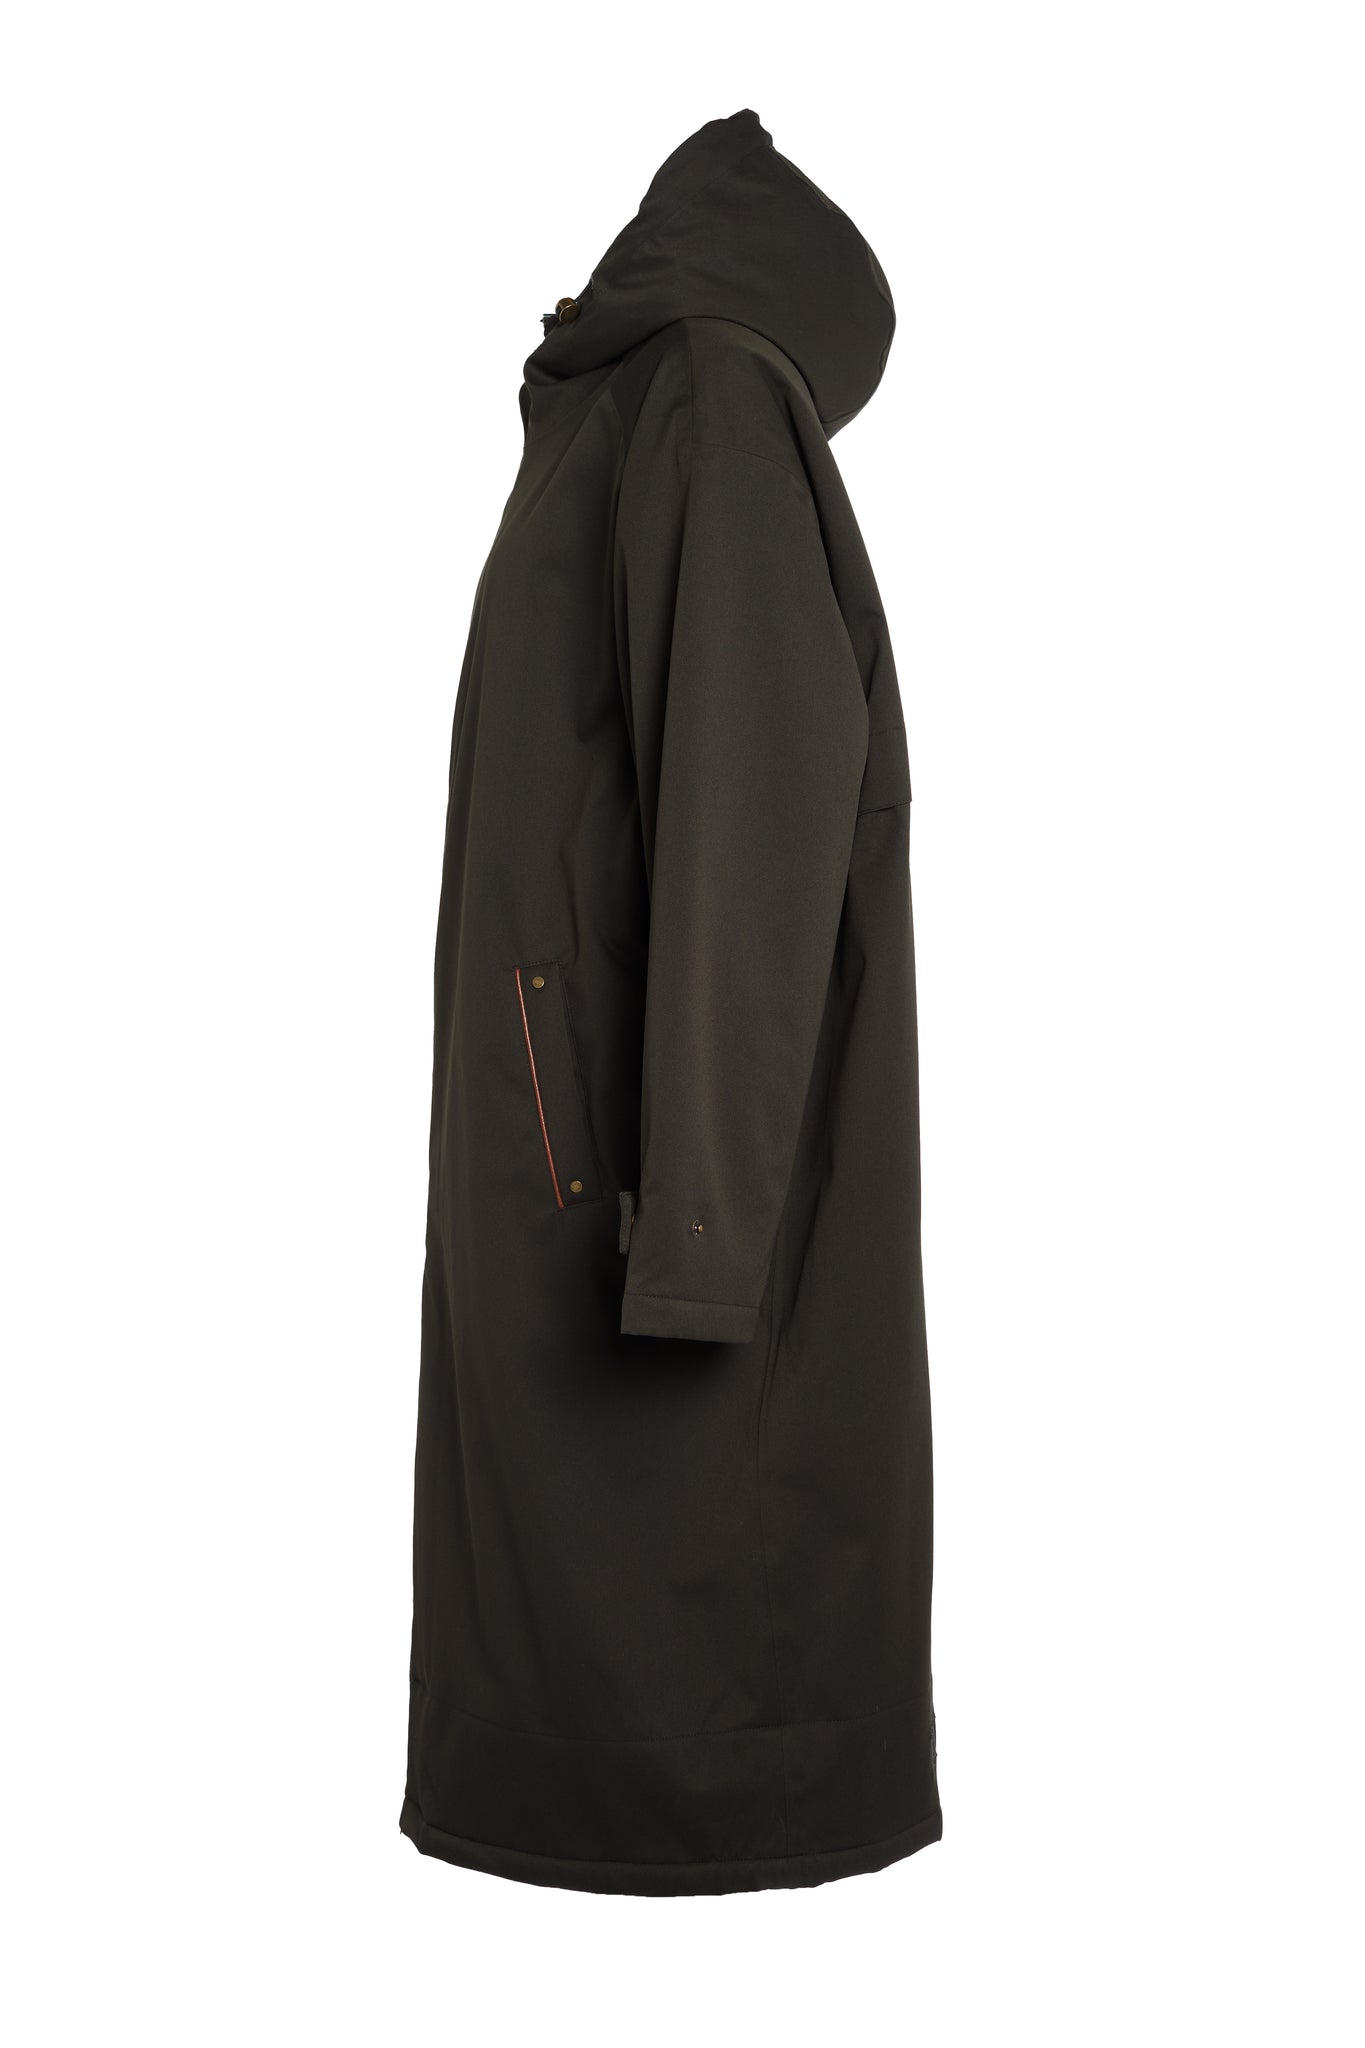 One-Size Waterproof Coat (Khaki)